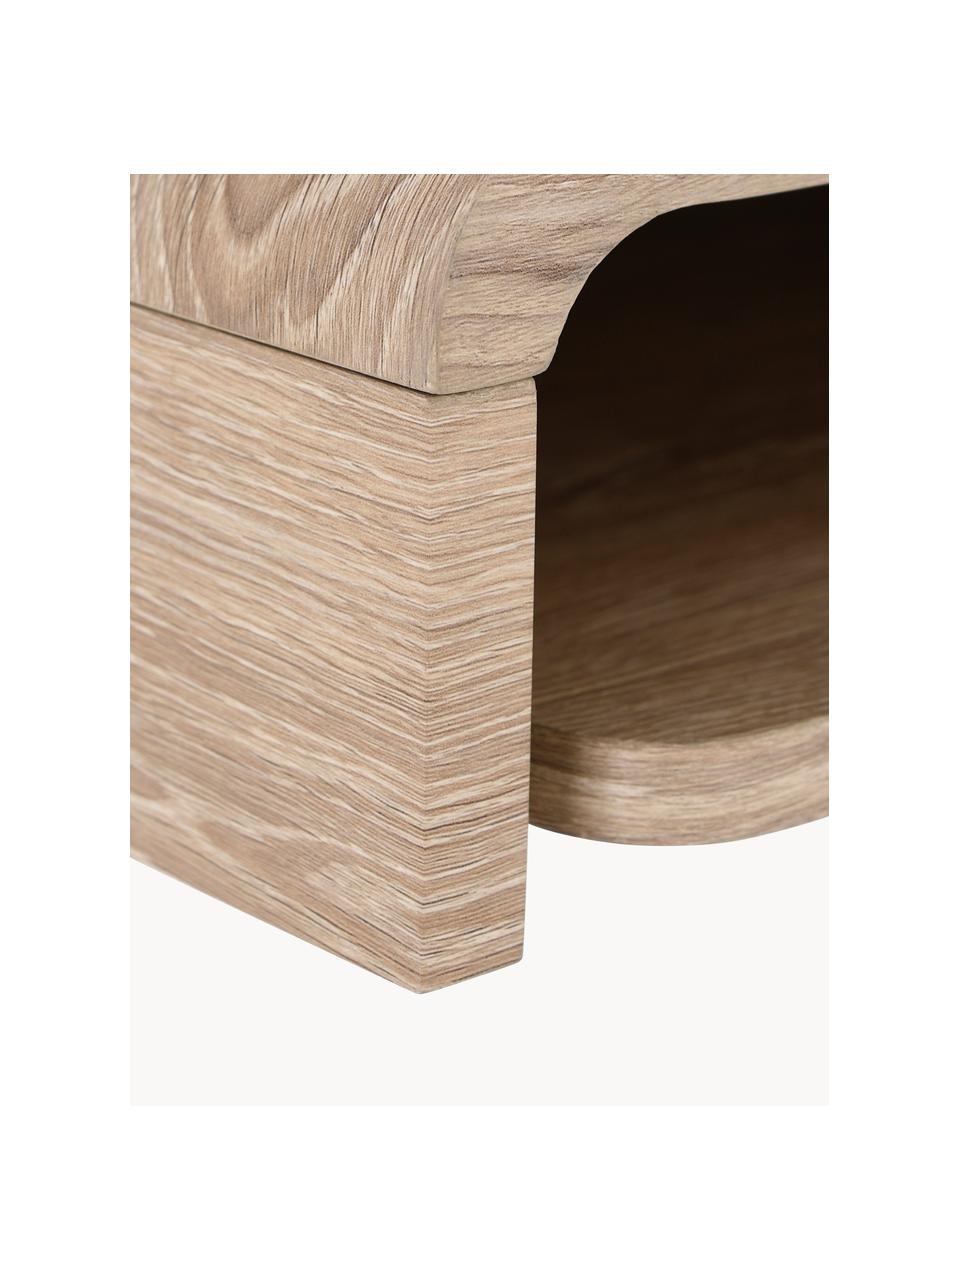 Nástěnný psací stůl ze dřeva Woodie, MDF deska (dřevovláknitá deska střední hustoty), Dřevo, Š 70 cm, H 30 cm